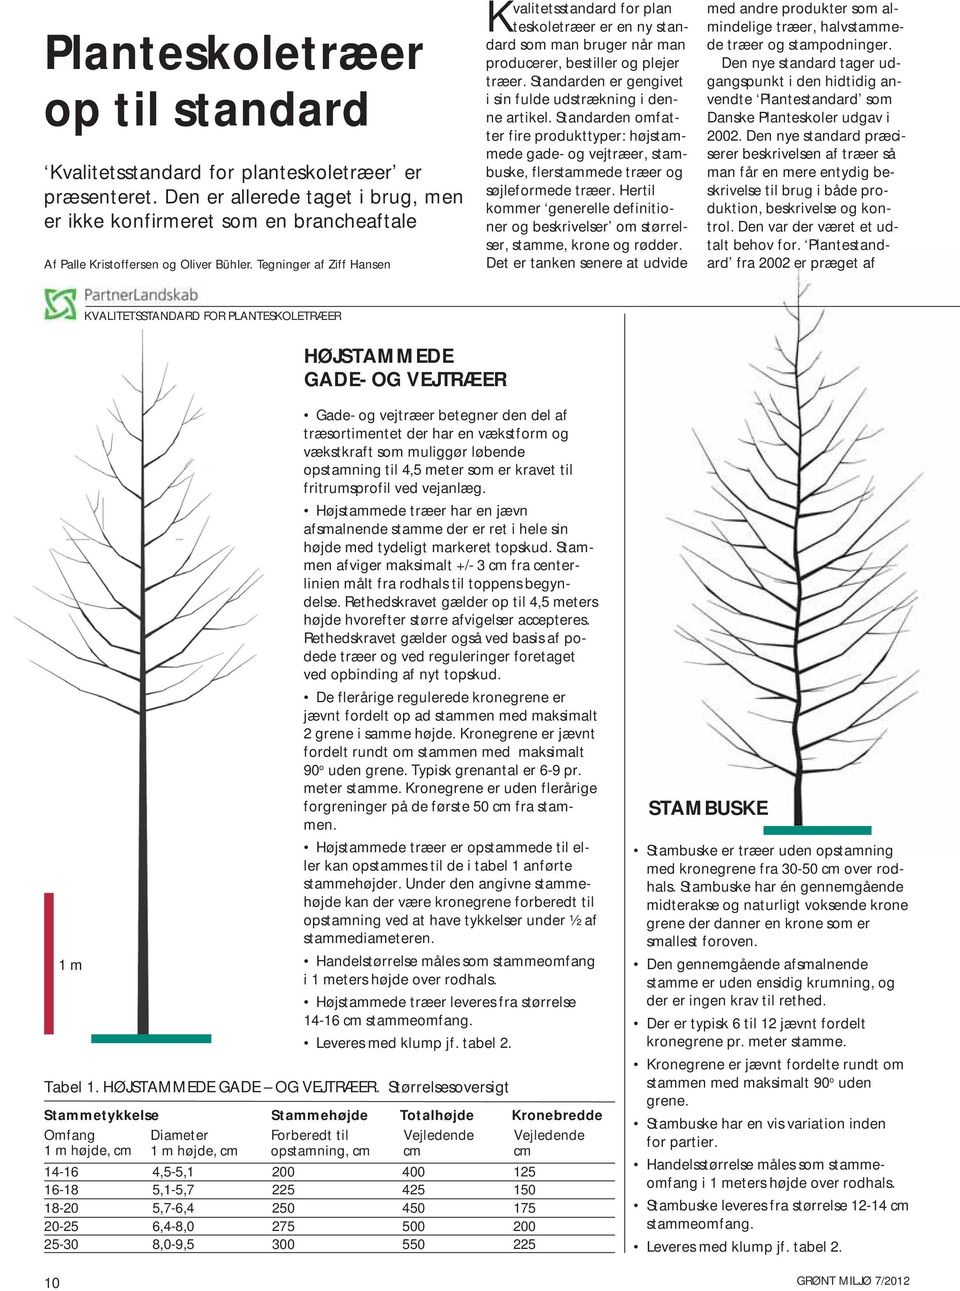 Tegninger af Ziff Hansen Kvalitetsstandard for plan teskoletræer er en ny standard som man bruger når man producerer, bestiller og plejer træer.